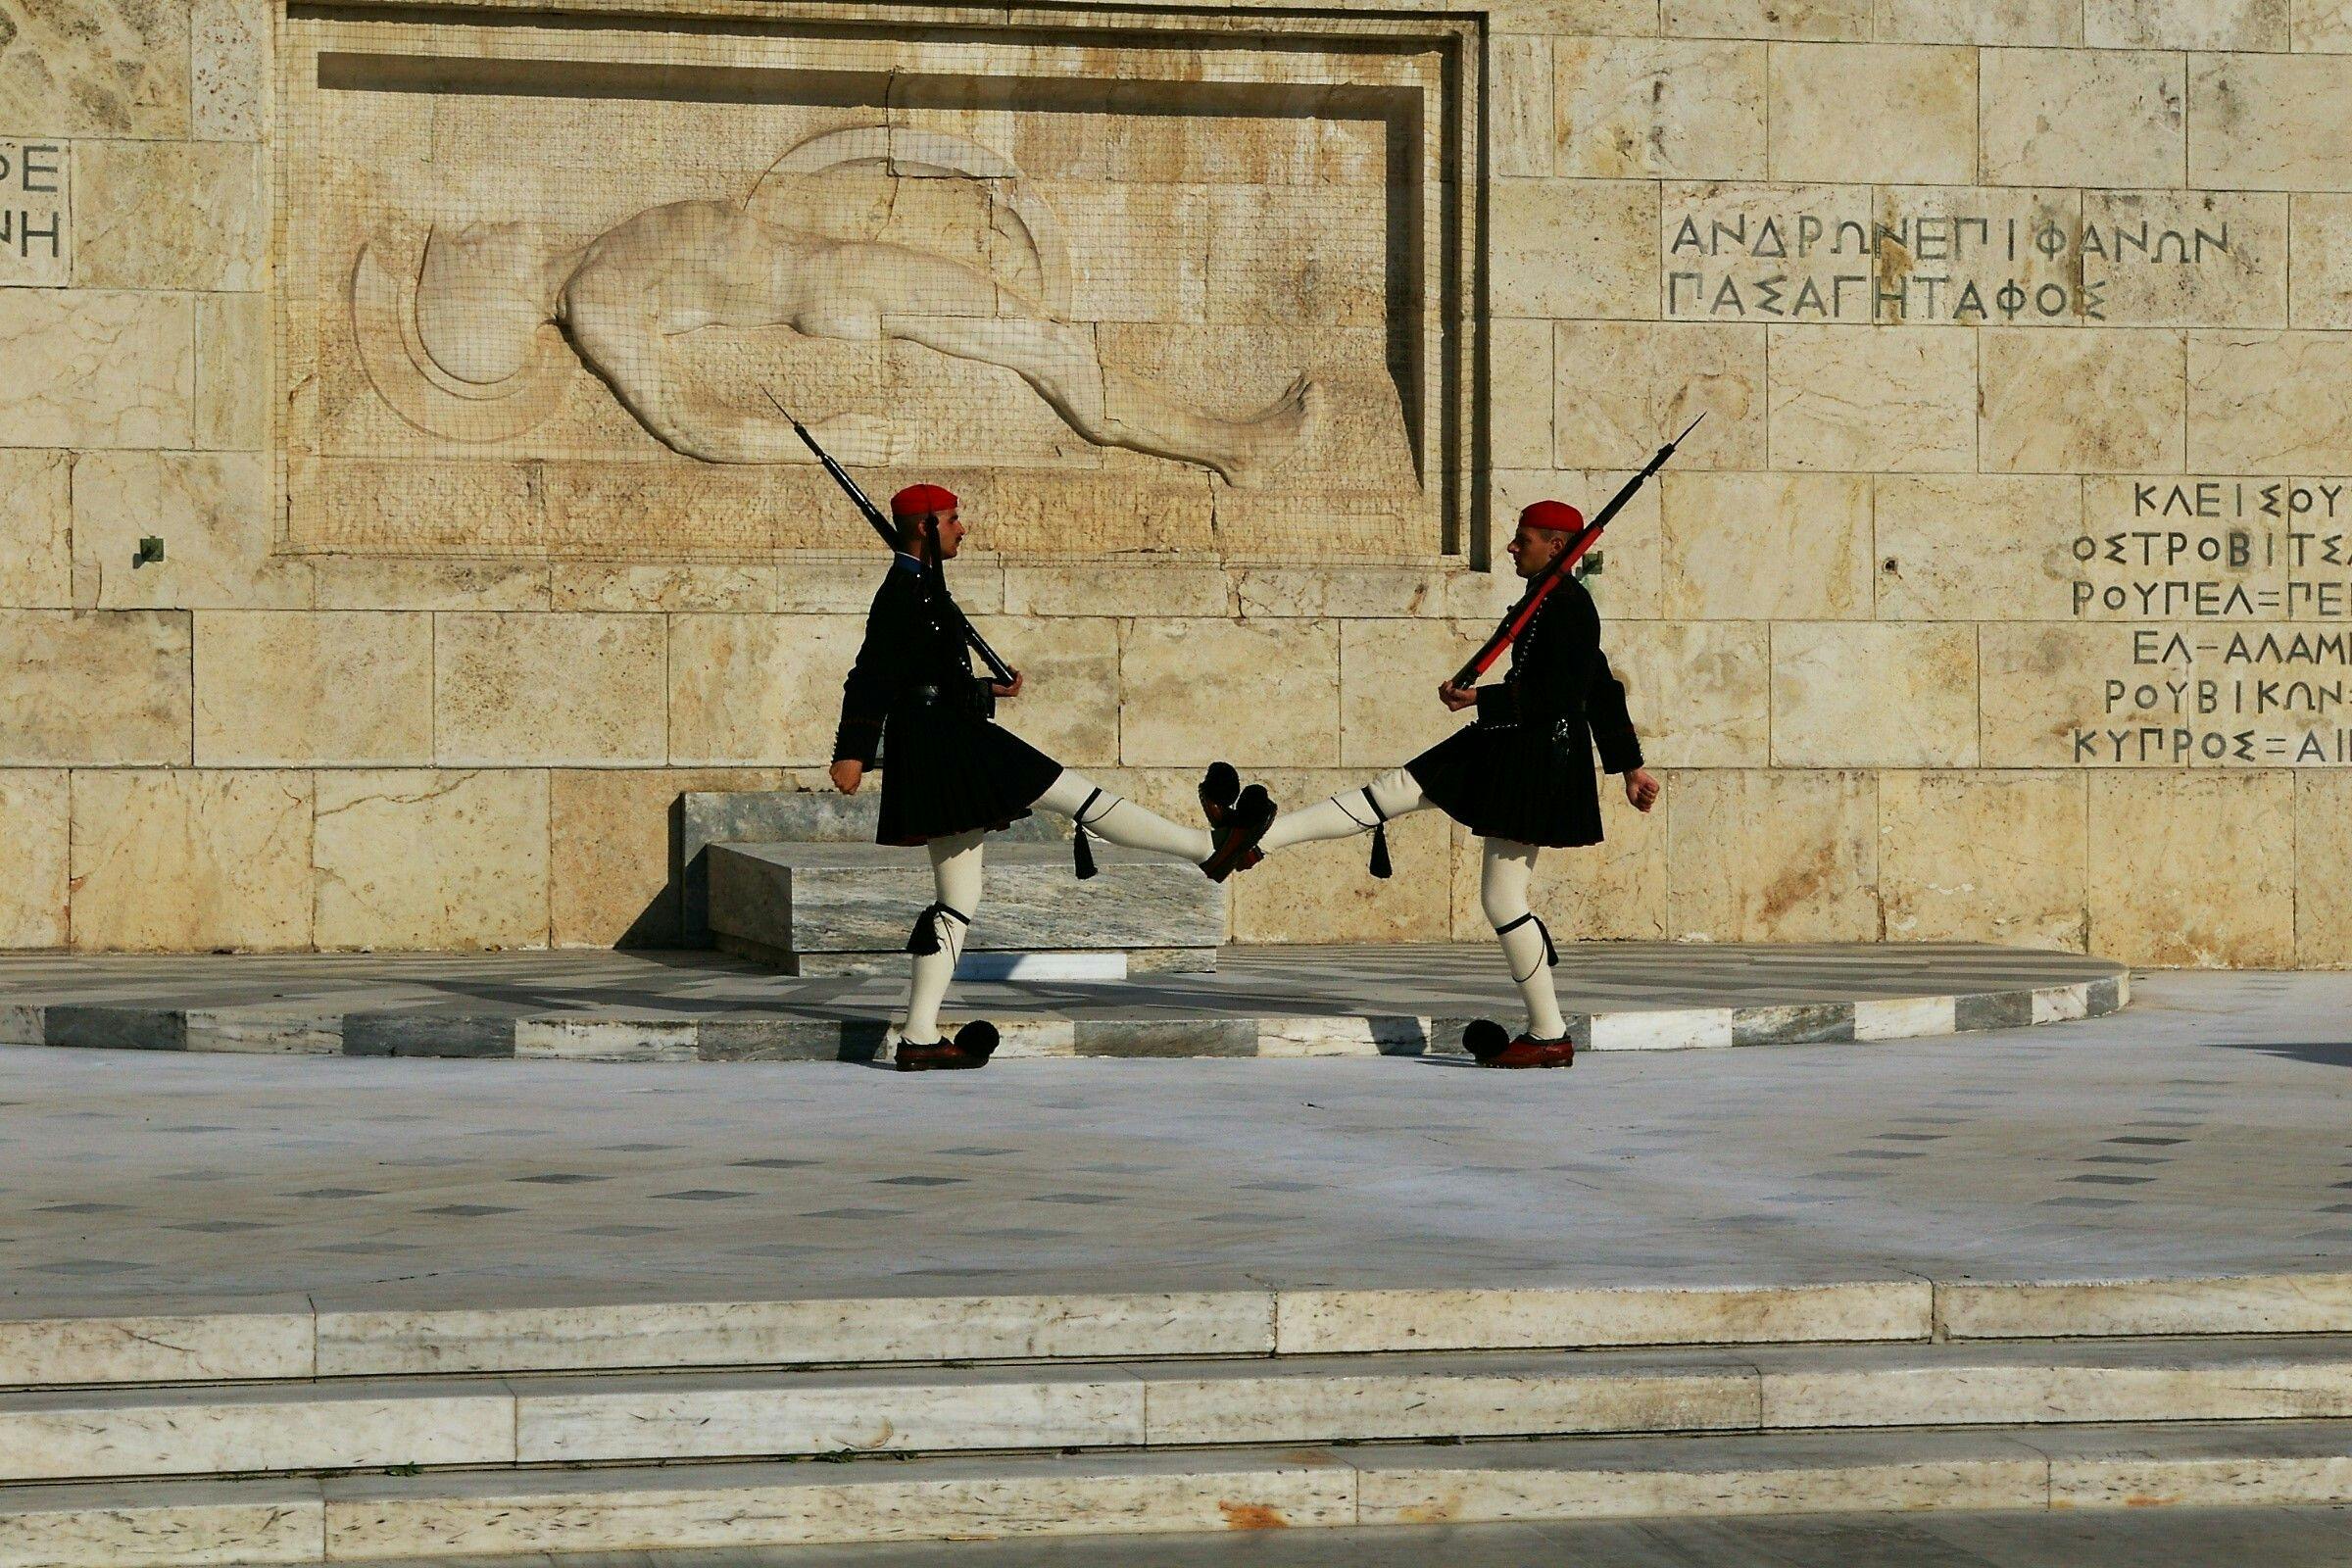 Wycieczka w małej grupie po Atenach, kolebce demokracji